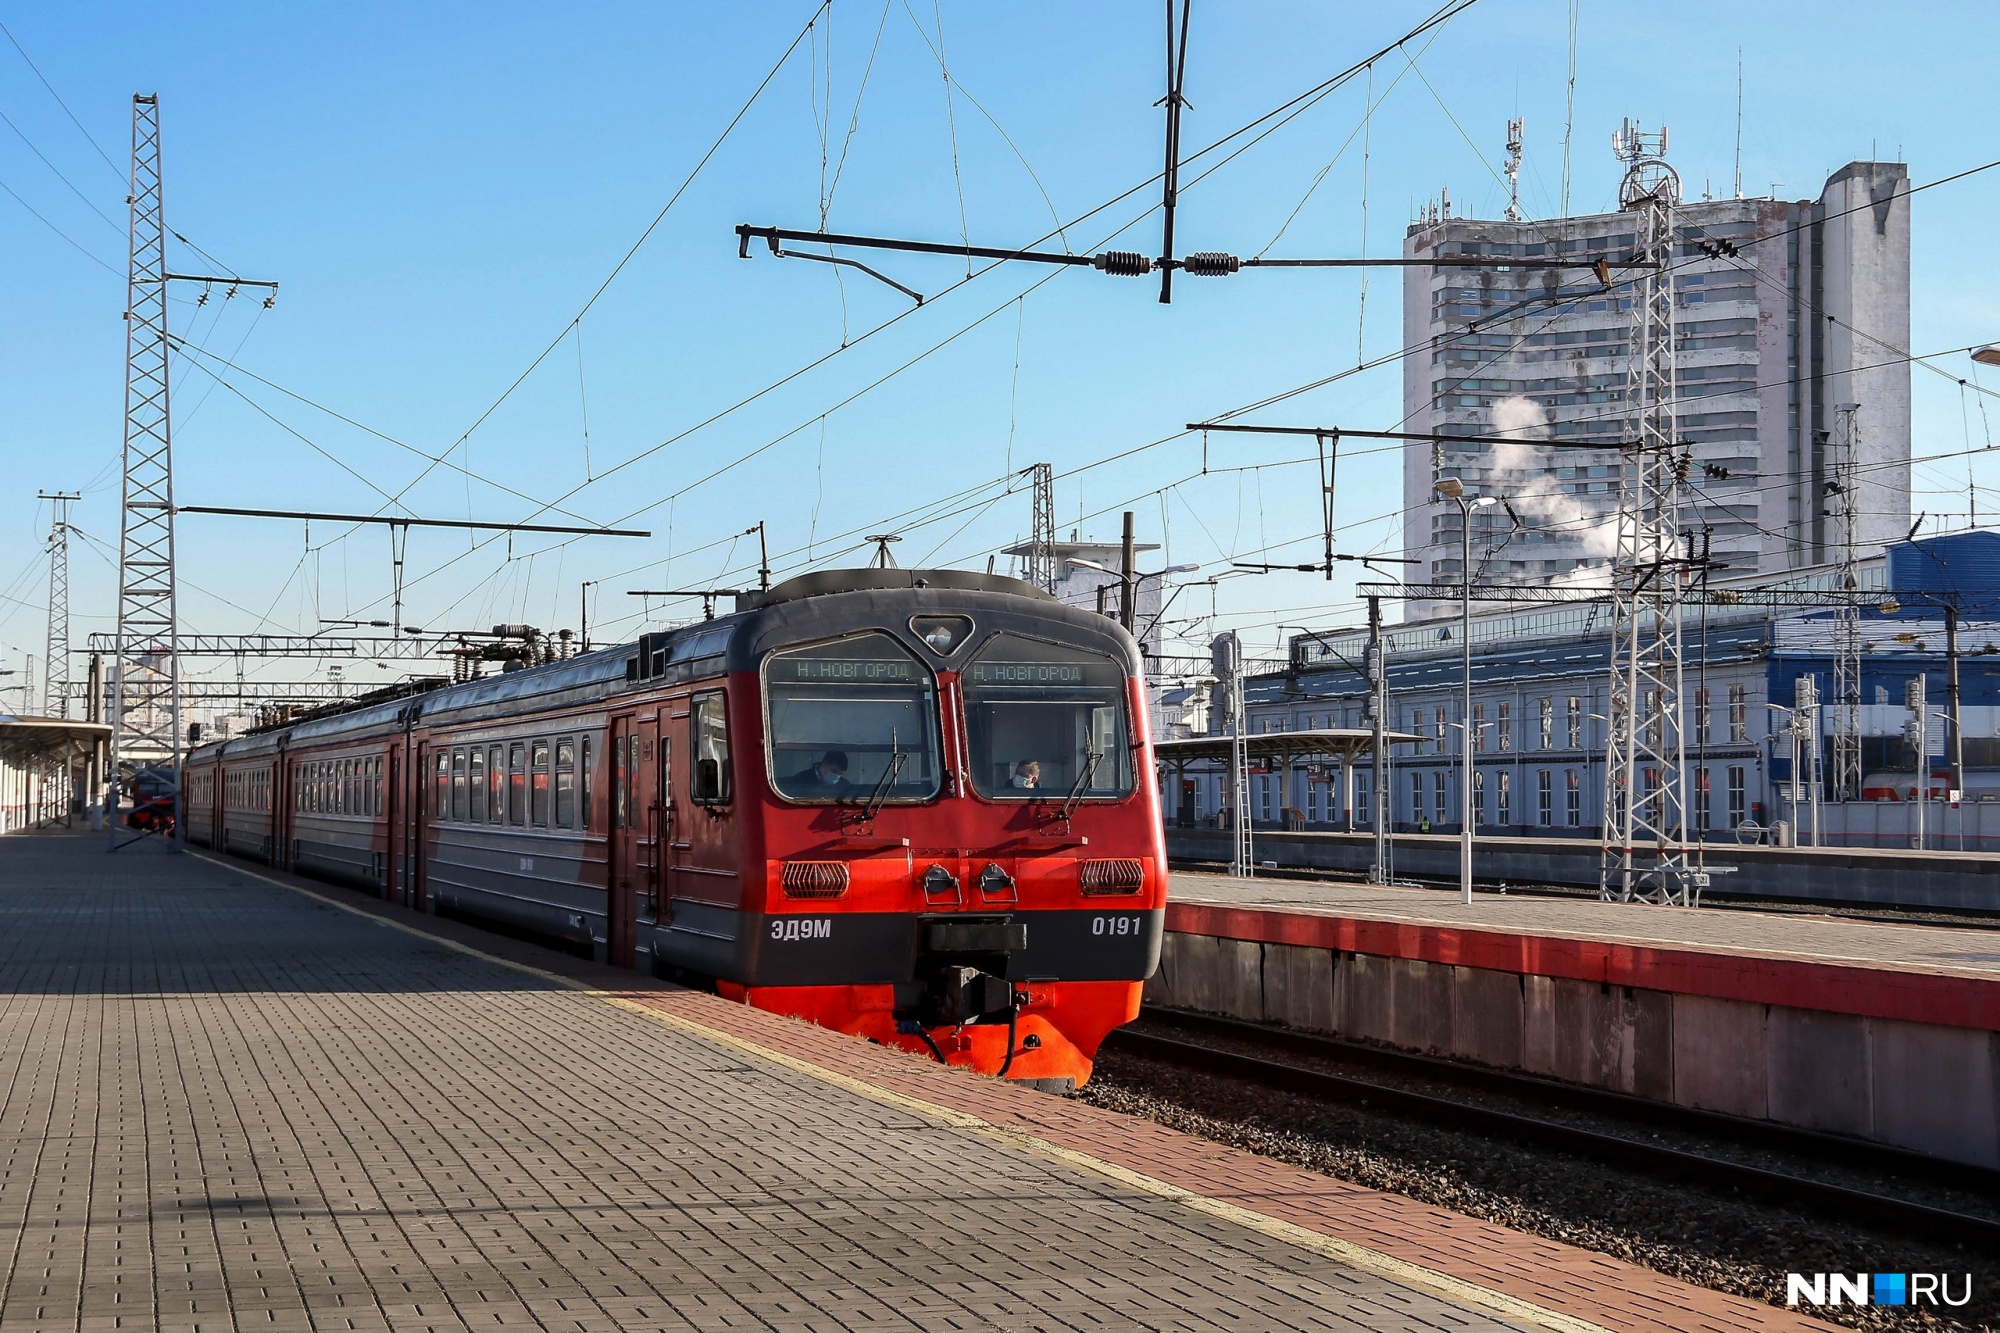 Планируем отдых: дополнительные поезда пустят в праздничные дни в ноябре из Нижнего Новгорода